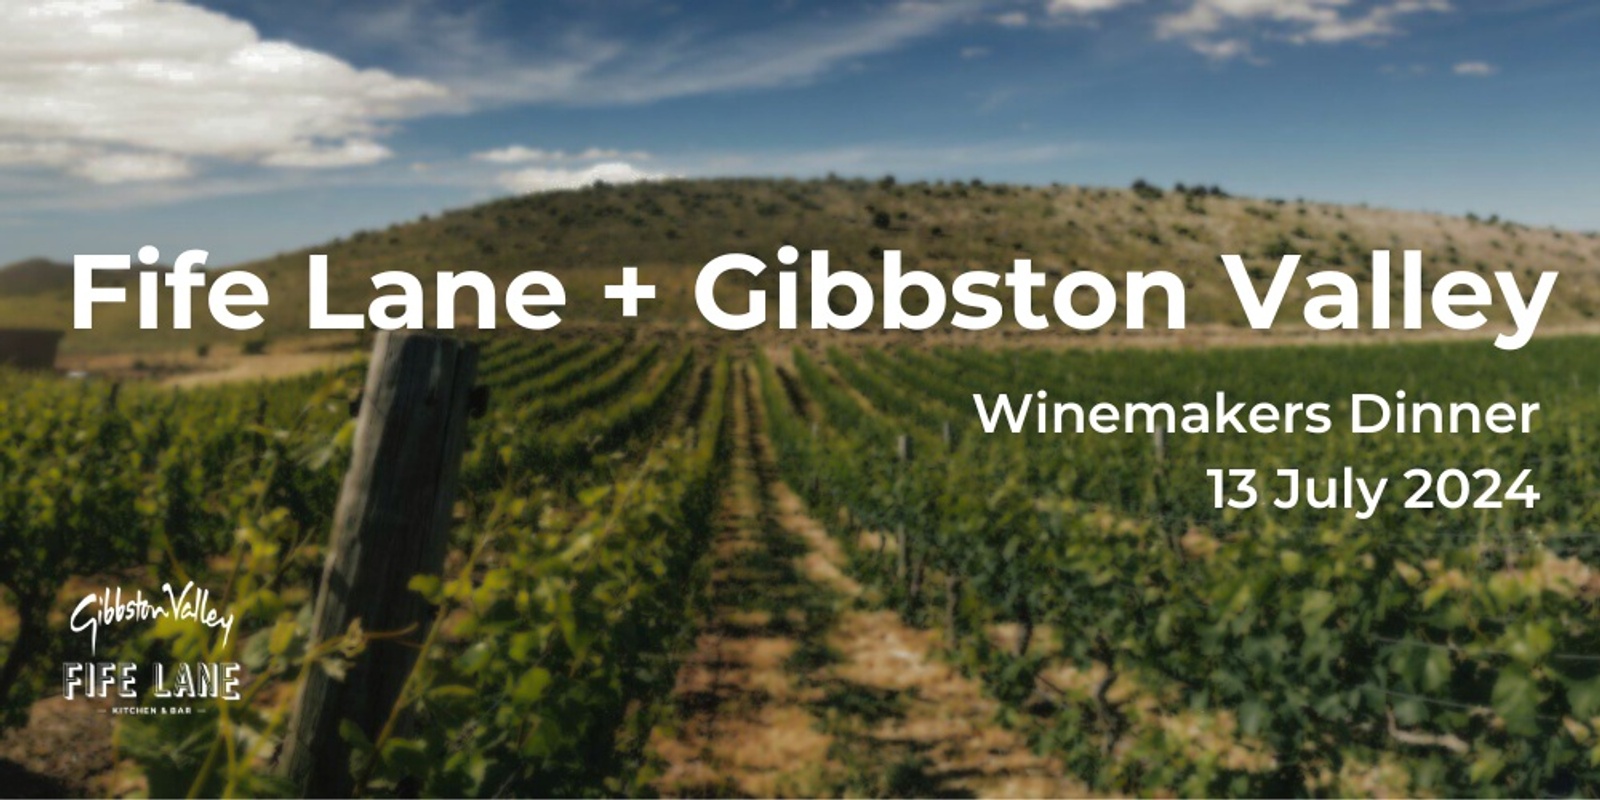 Banner image for Fife Lane + Gibbston Valley Winemaker Dinner